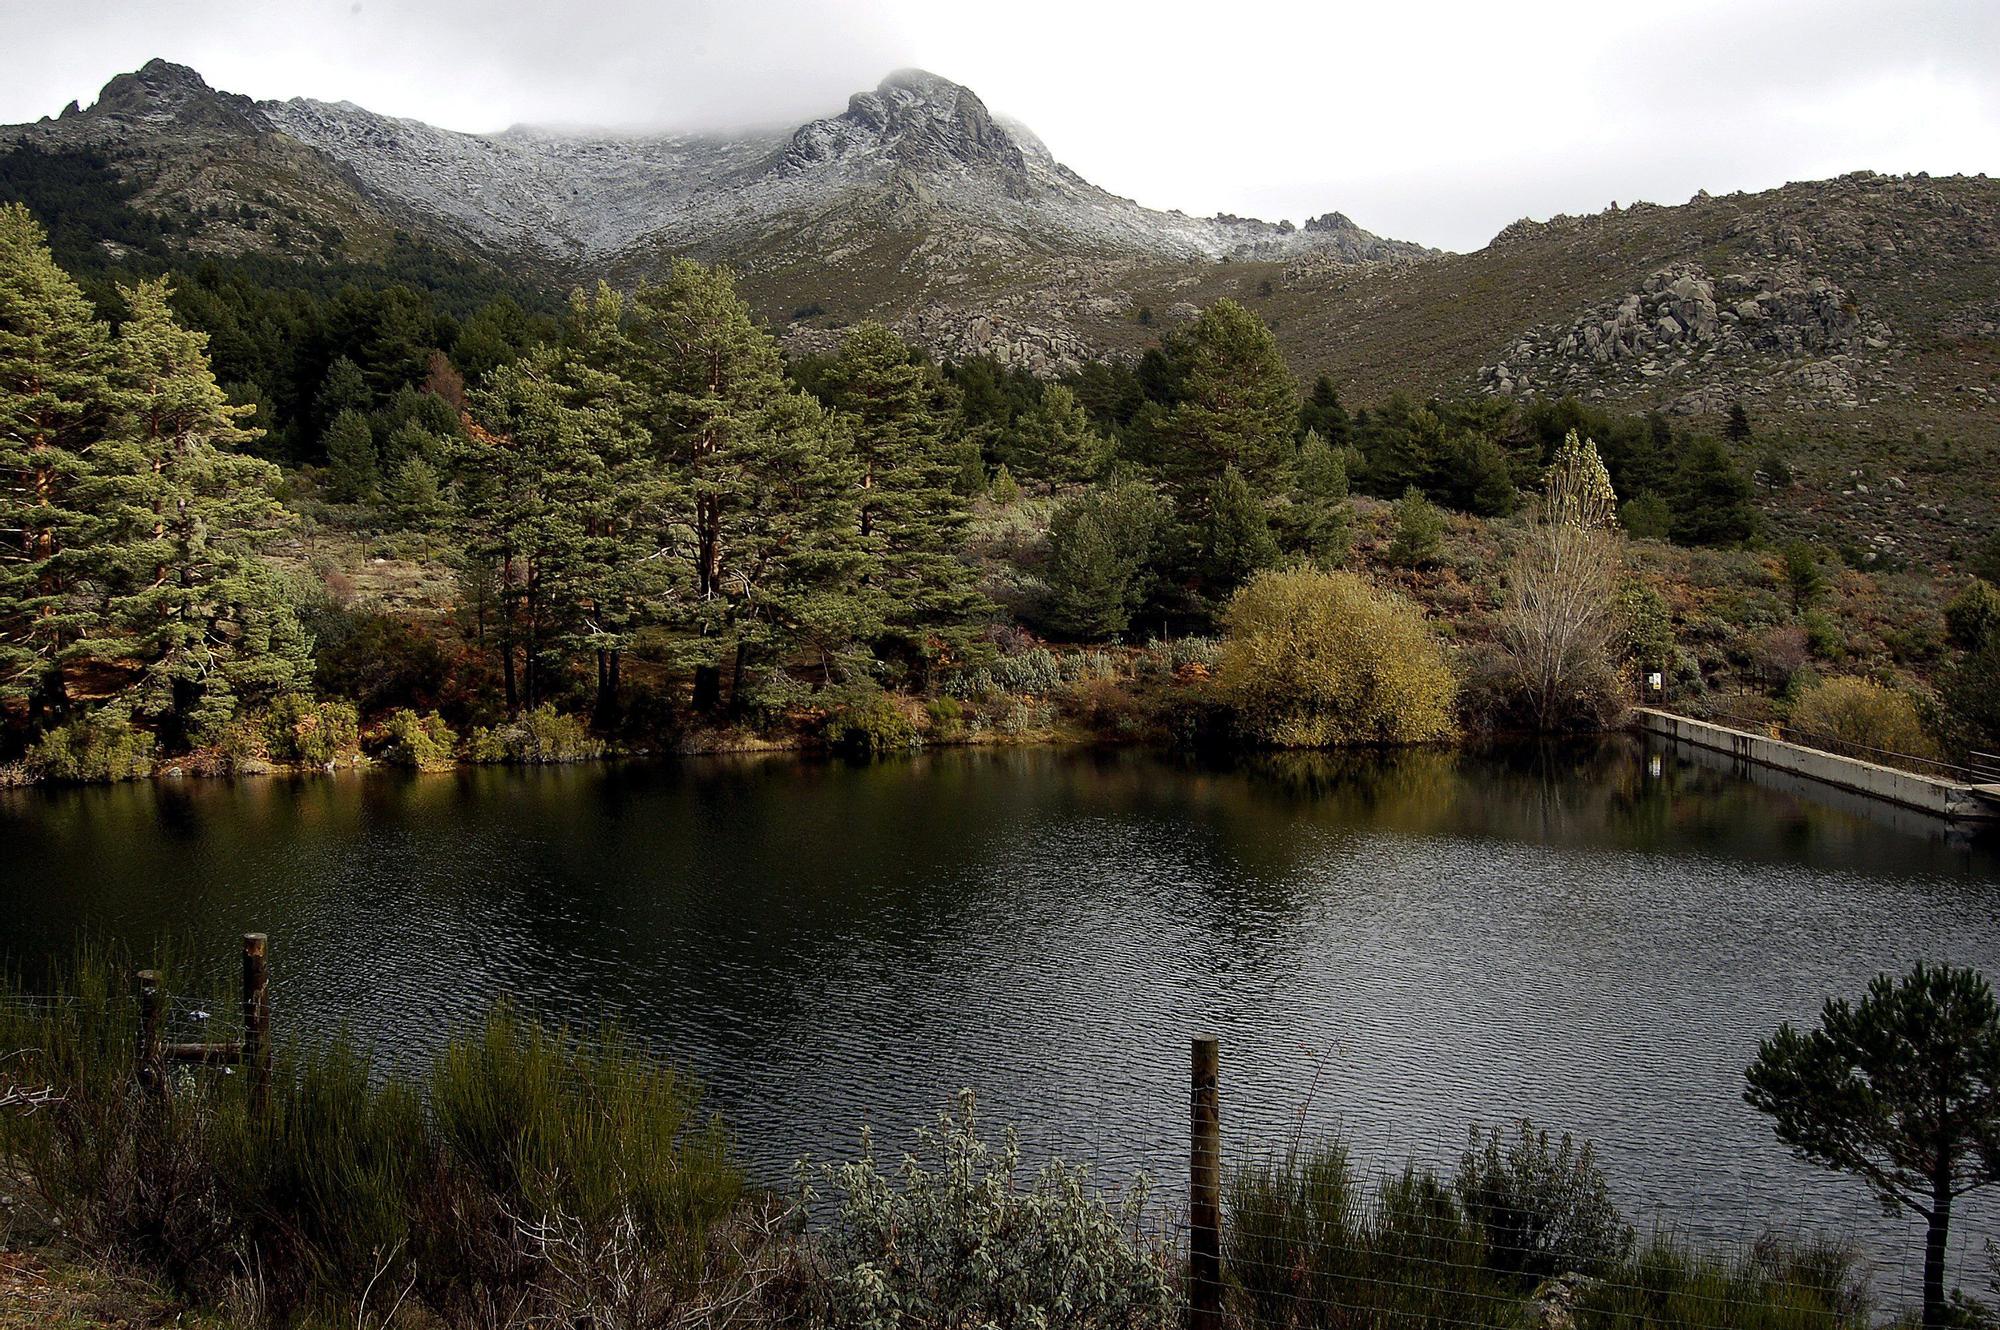 El embalse de La Barranca, enmarcado en el típico paisaje de roca y vegetación de montaña de la Sierra de Guadarrama.